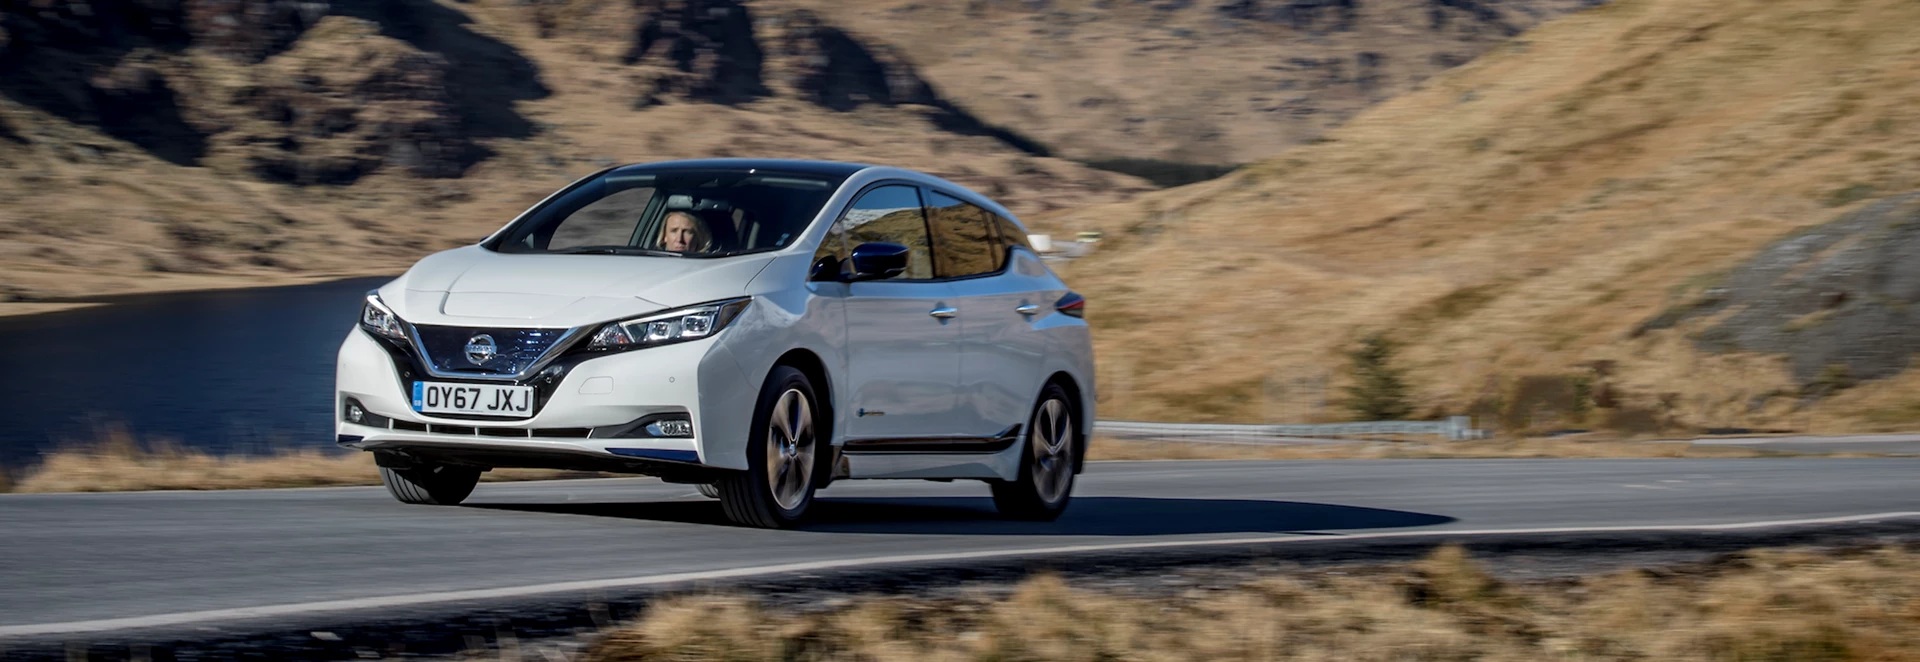 Nissan Leaf scores top marks on Euro NCAP test